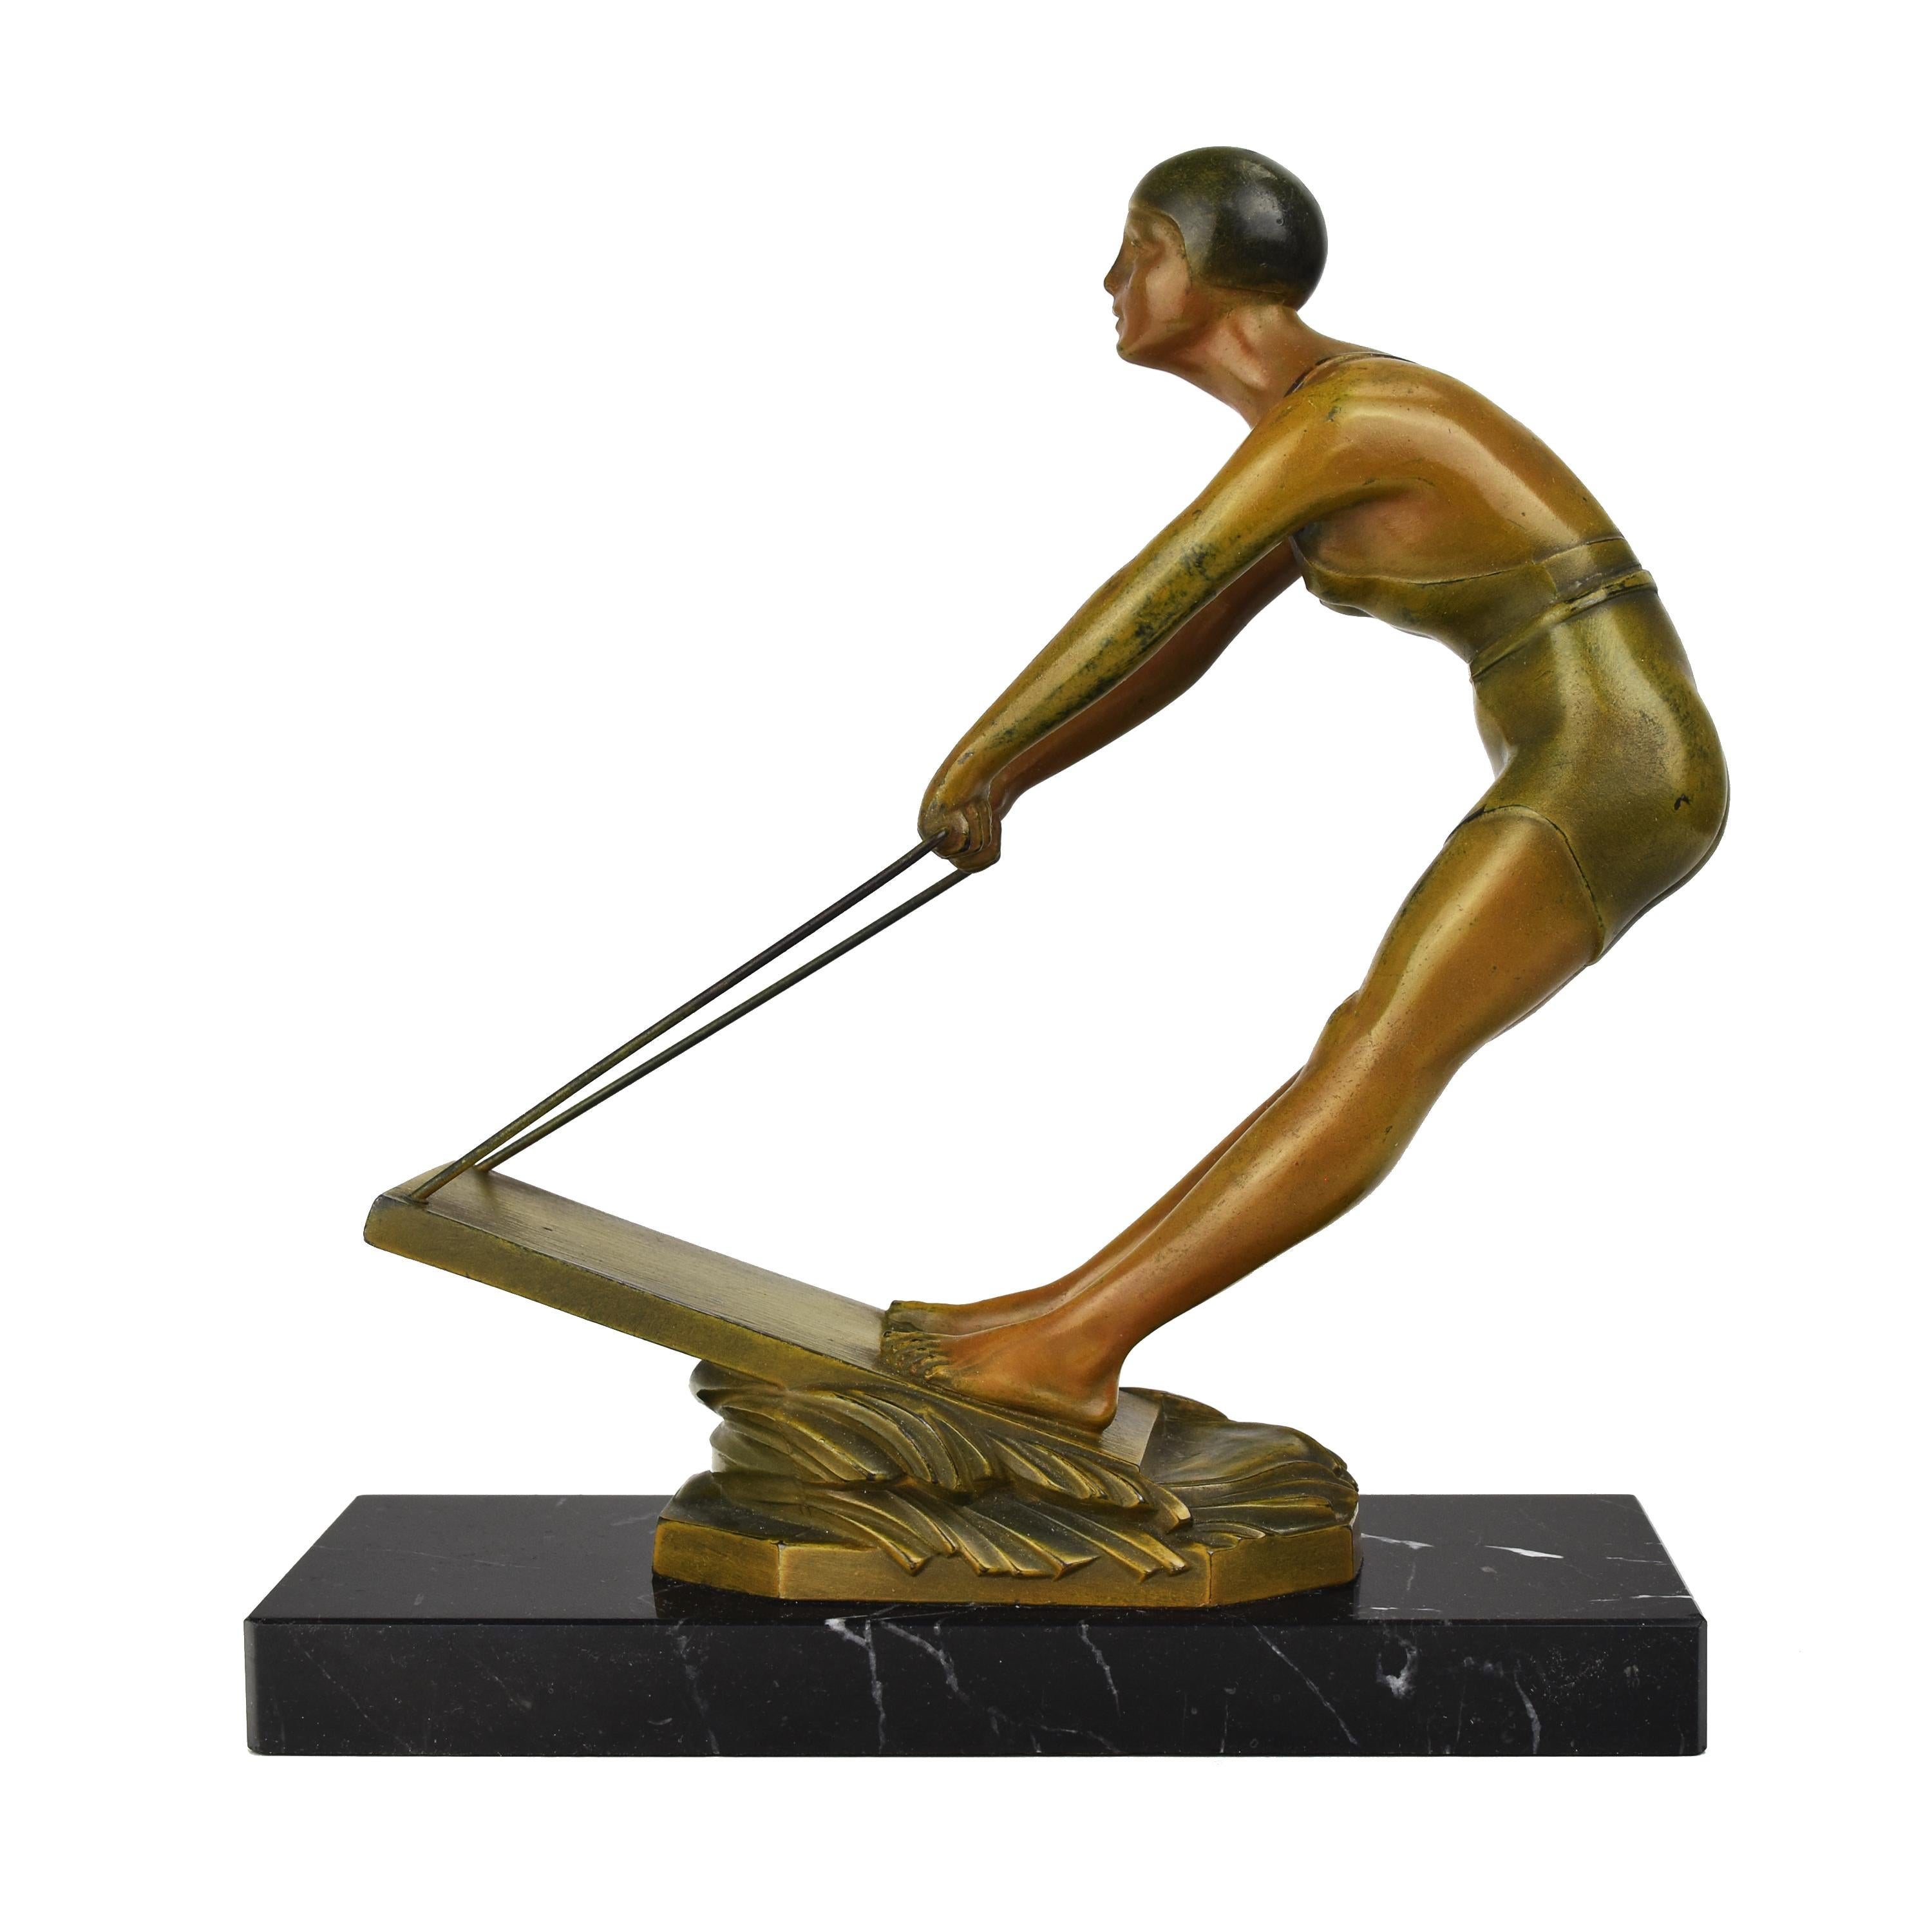 Cette sculpture représente une femme en train de faire du wakeboard dans une pose dynamique, tenant fermement la poignée attachée au wakeboard sur les vagues. La figurine est vêtue d'un maillot de bain moulant et porte un bonnet de bain. La